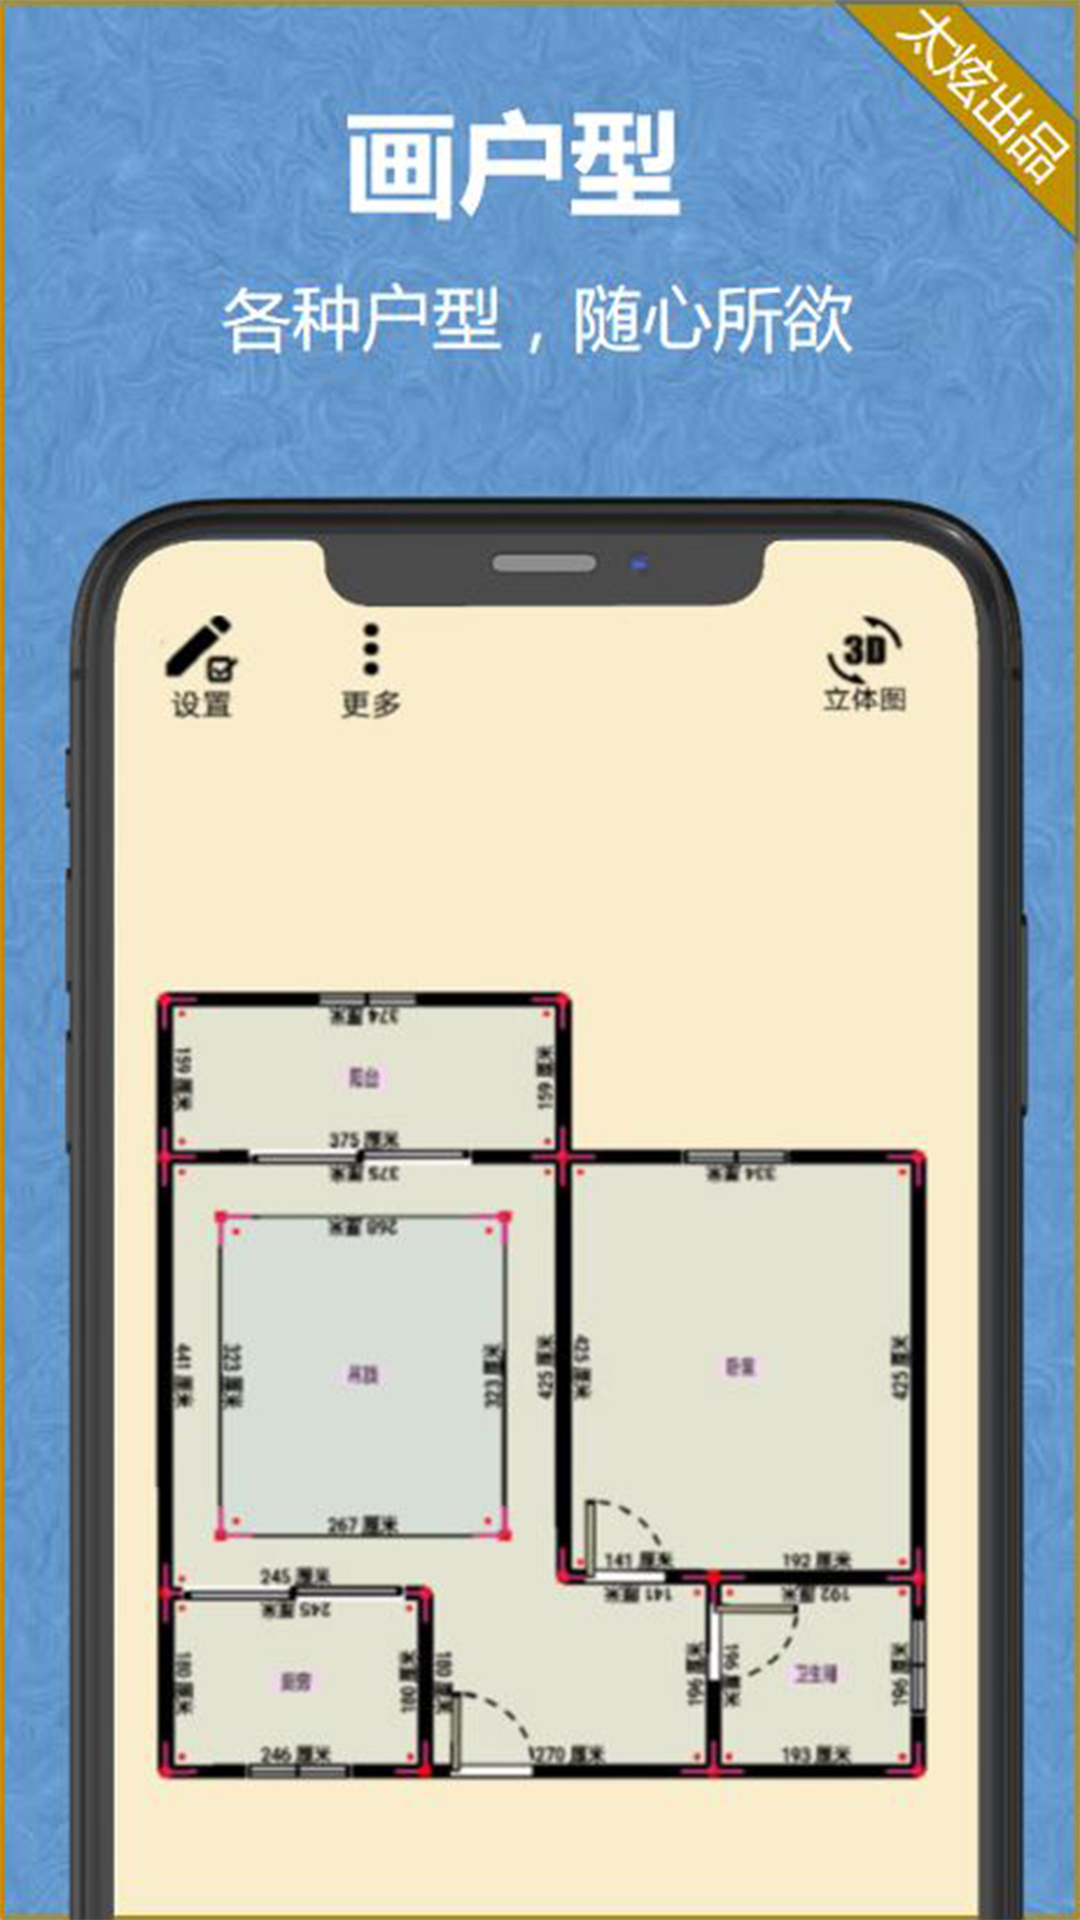 家炫-DIY房屋设计v1.0.59截图2